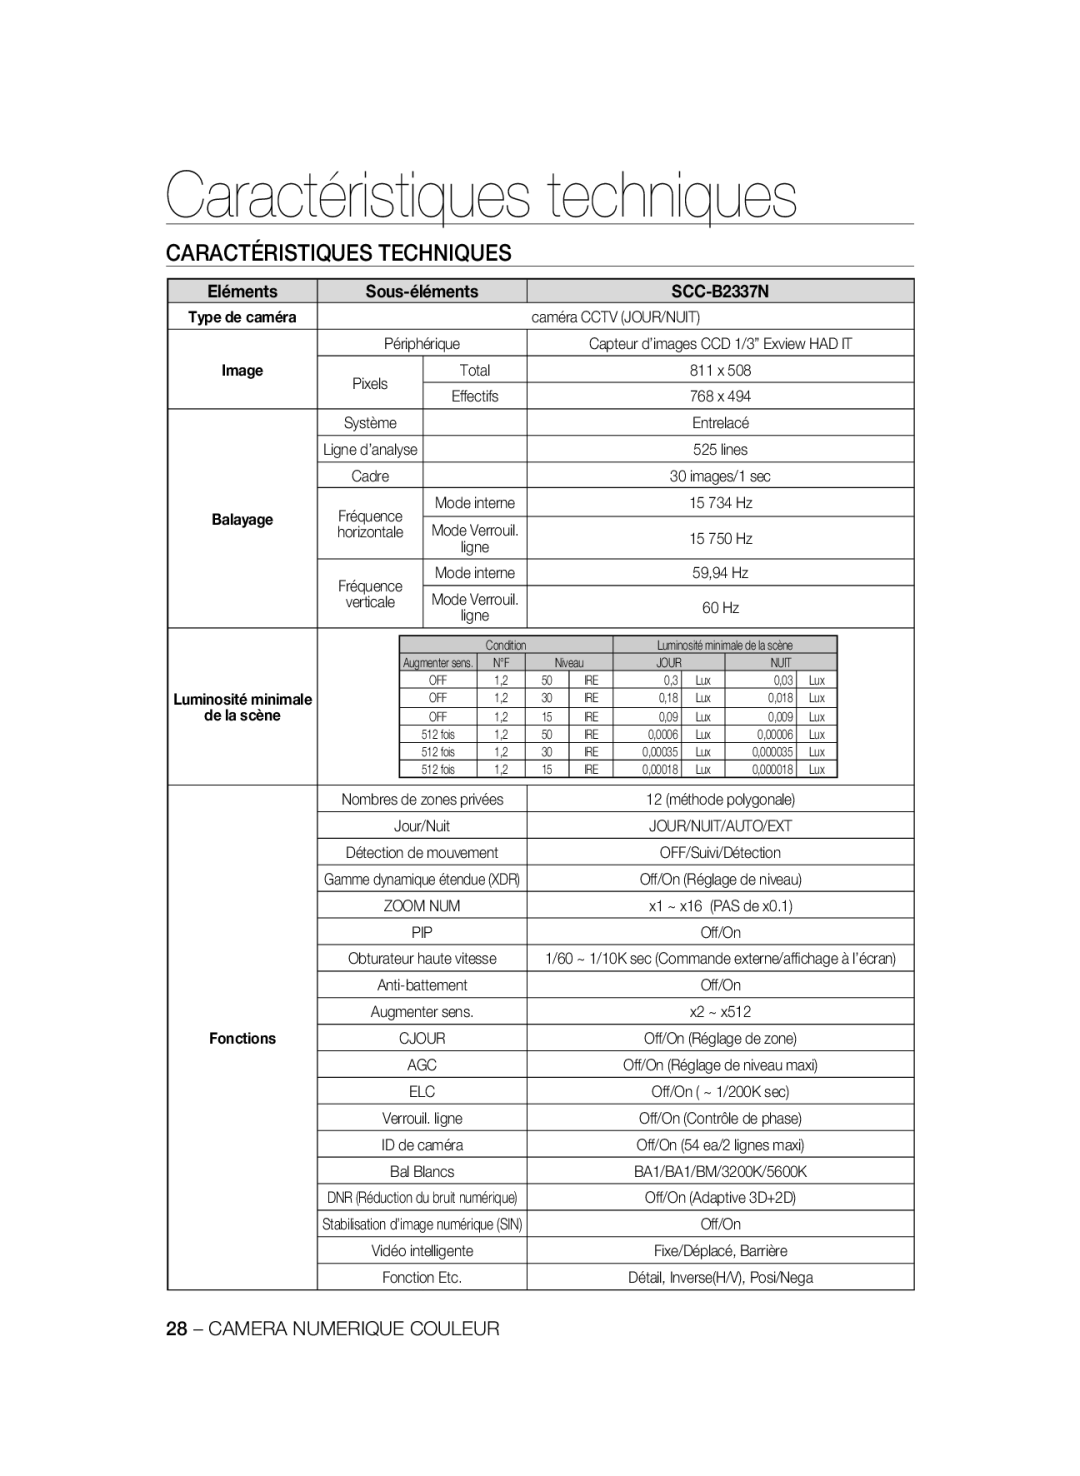 Samsung SCC-B2337P manual Caractéristiques techniques, Caractéristiques Techniques, Eléments, SCC-B2337N, Sous-éléments 